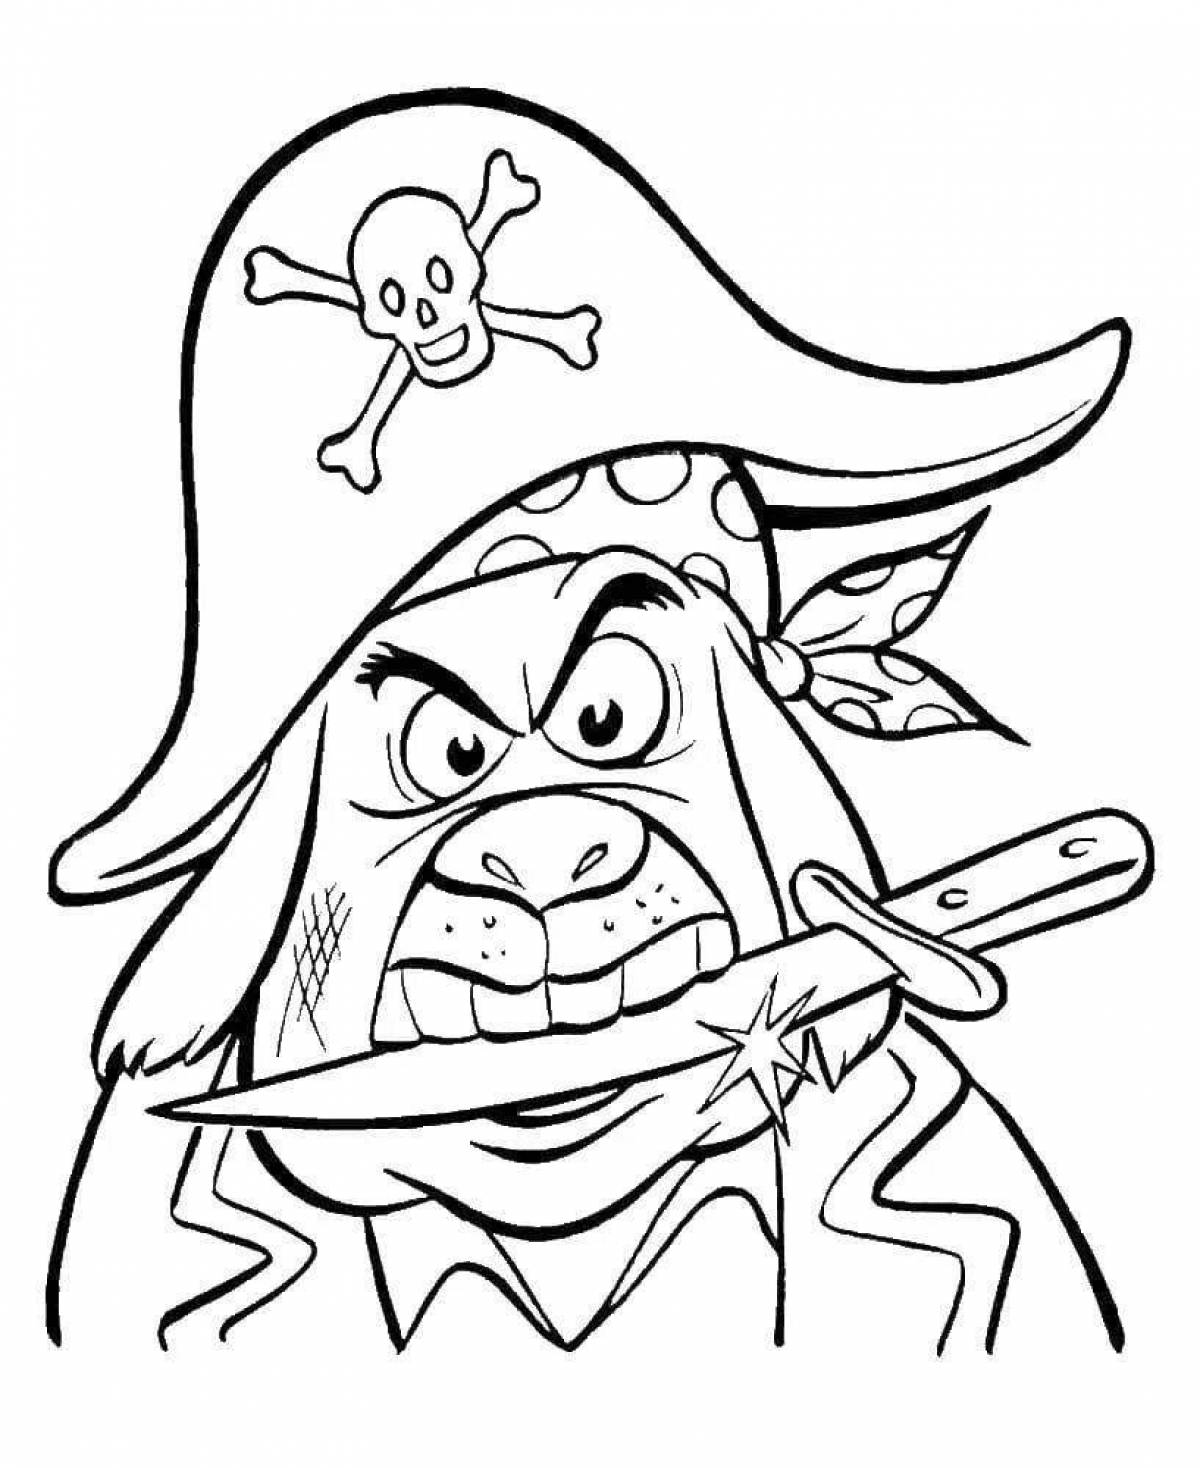 Dashing pirate coloring book